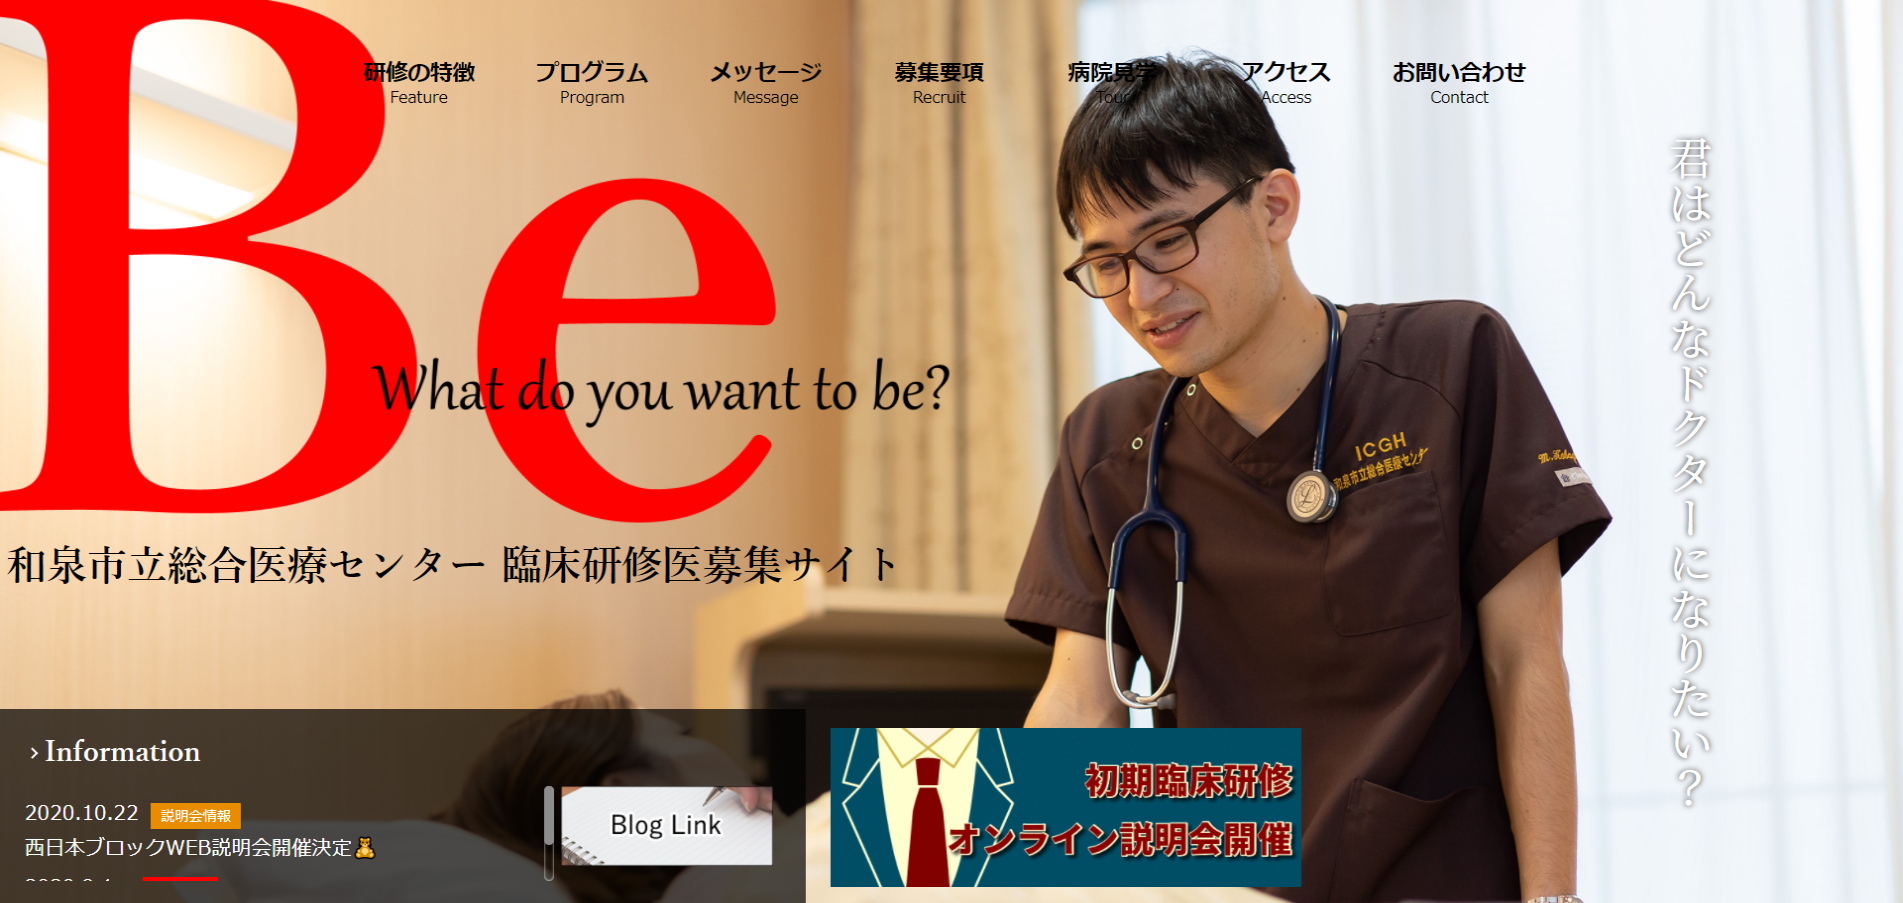 2017年4月作成「和泉市立総合医療センター」臨床研修医募集サイト